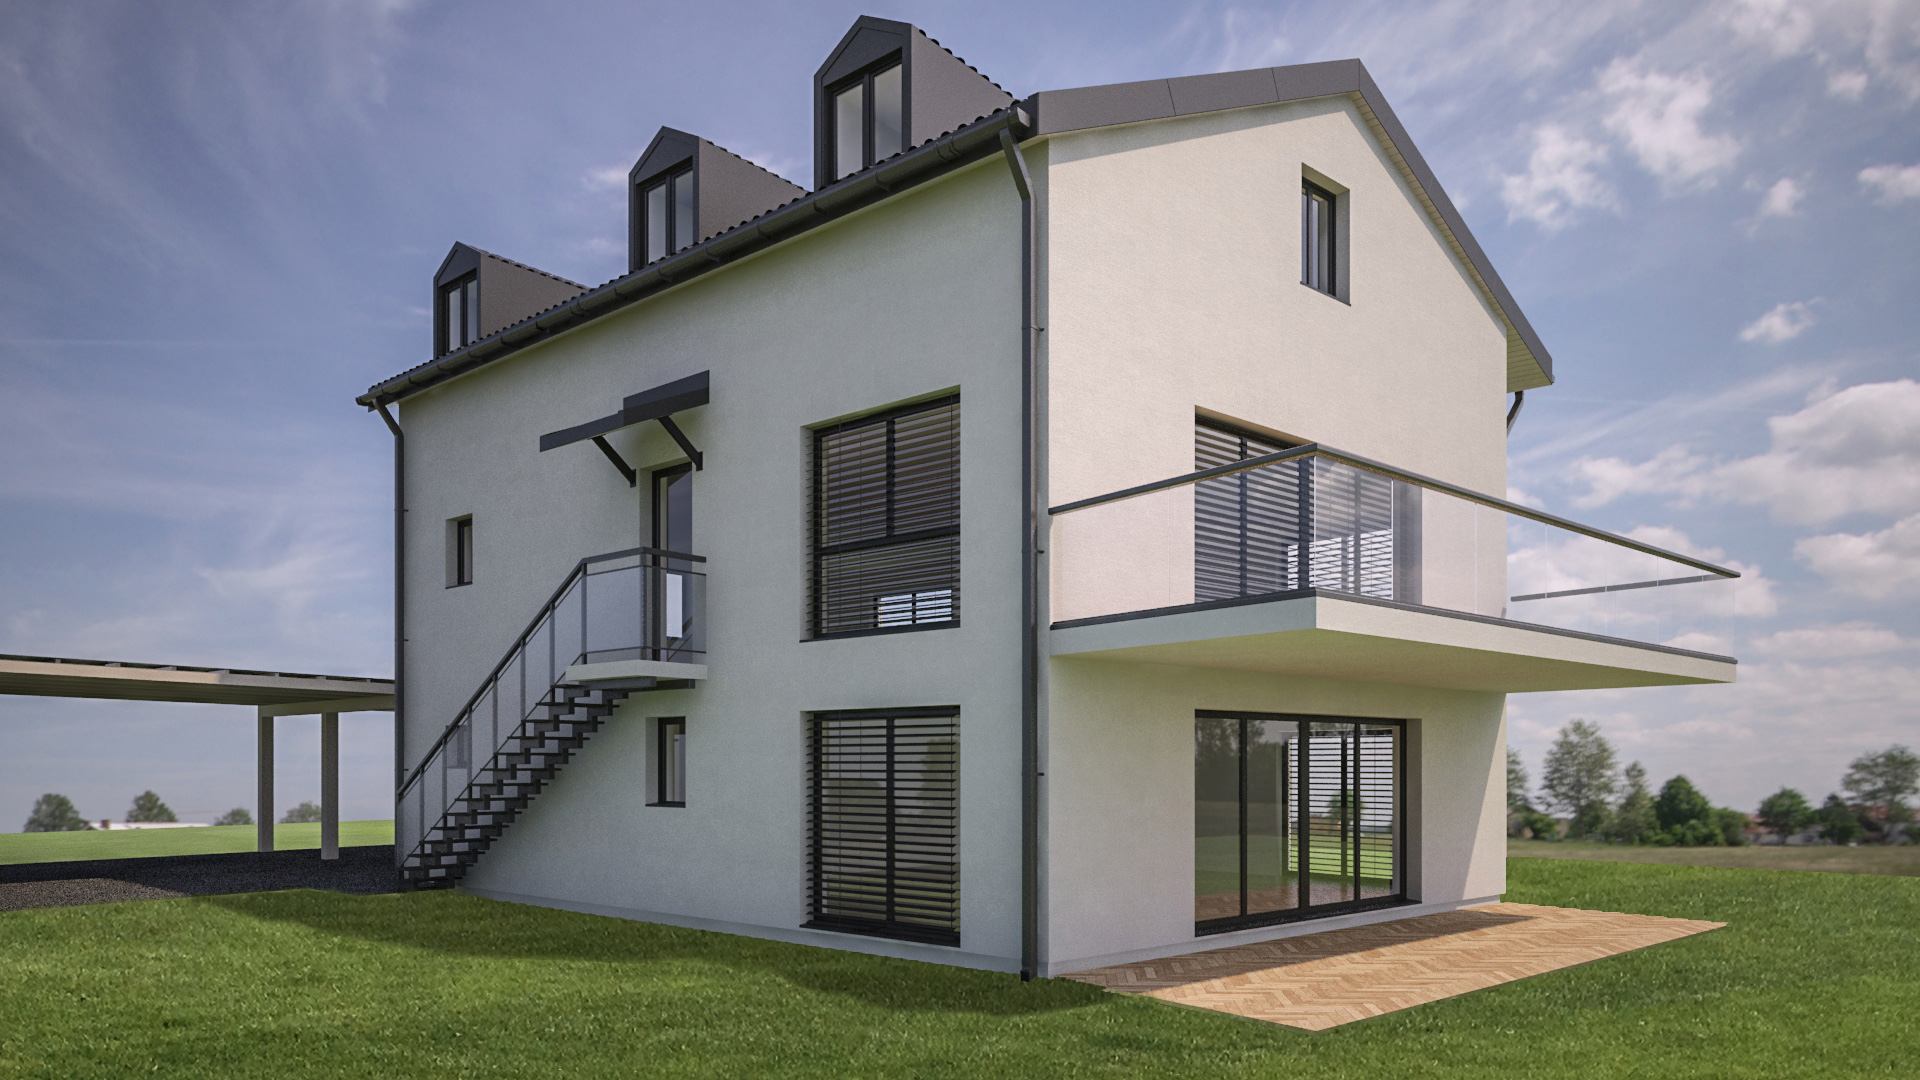 C3 Concept, visualisation 3D à Bulle. cressier villa 2 appartements extérieur